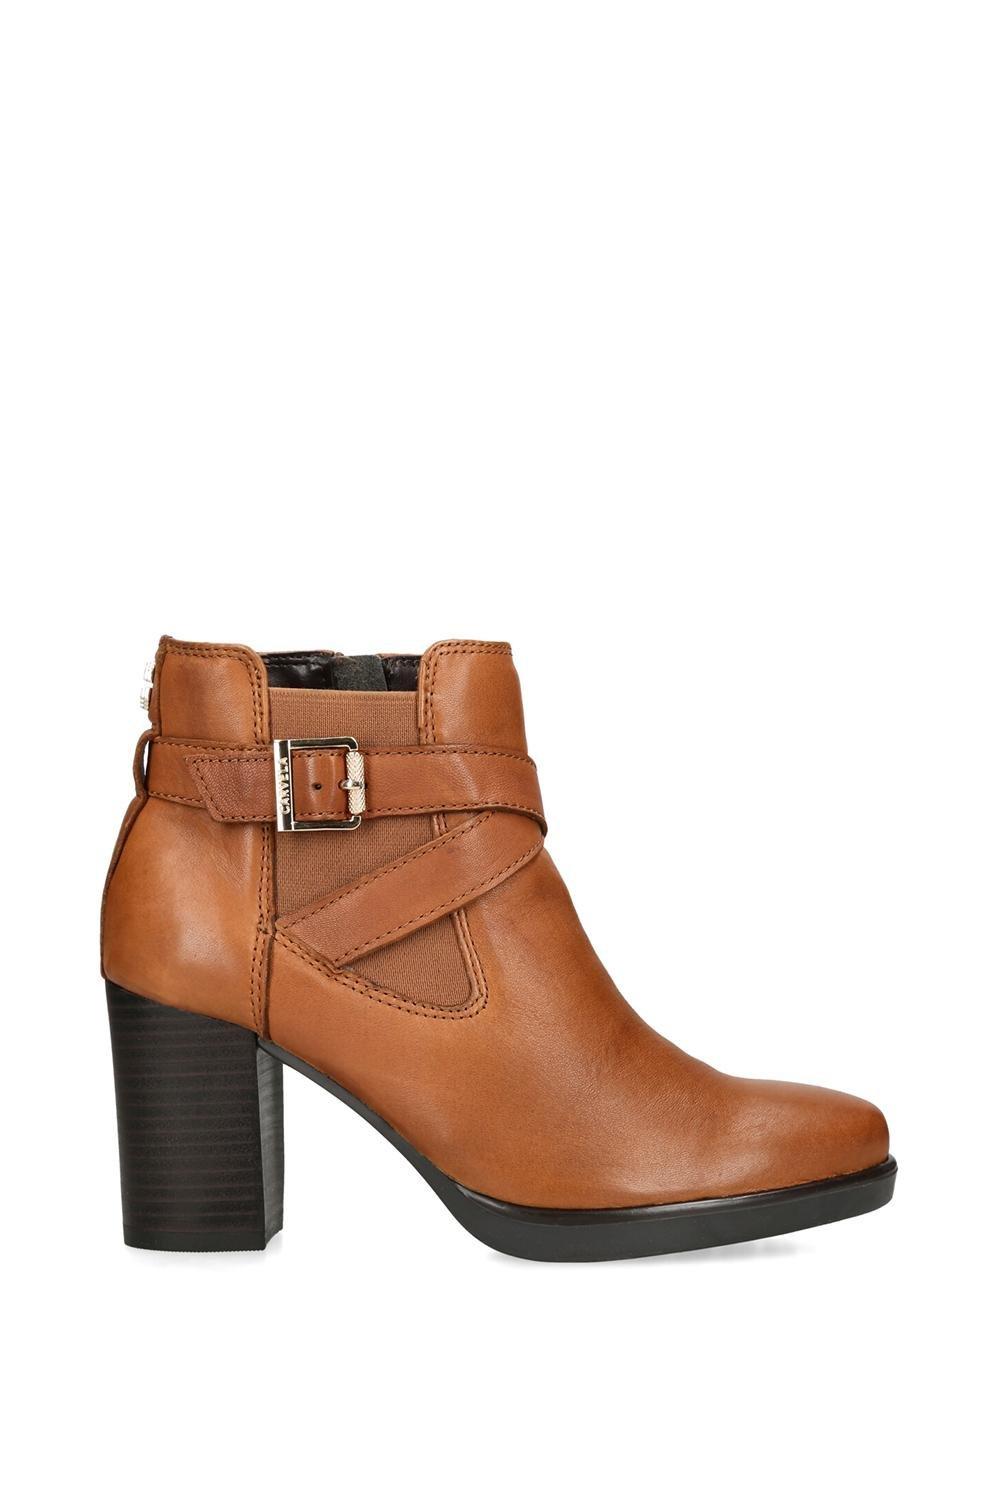 Кожаные ботинки Silver 2 Carvela, коричневый кожаные ботинки secure lace up 2 carvela черный